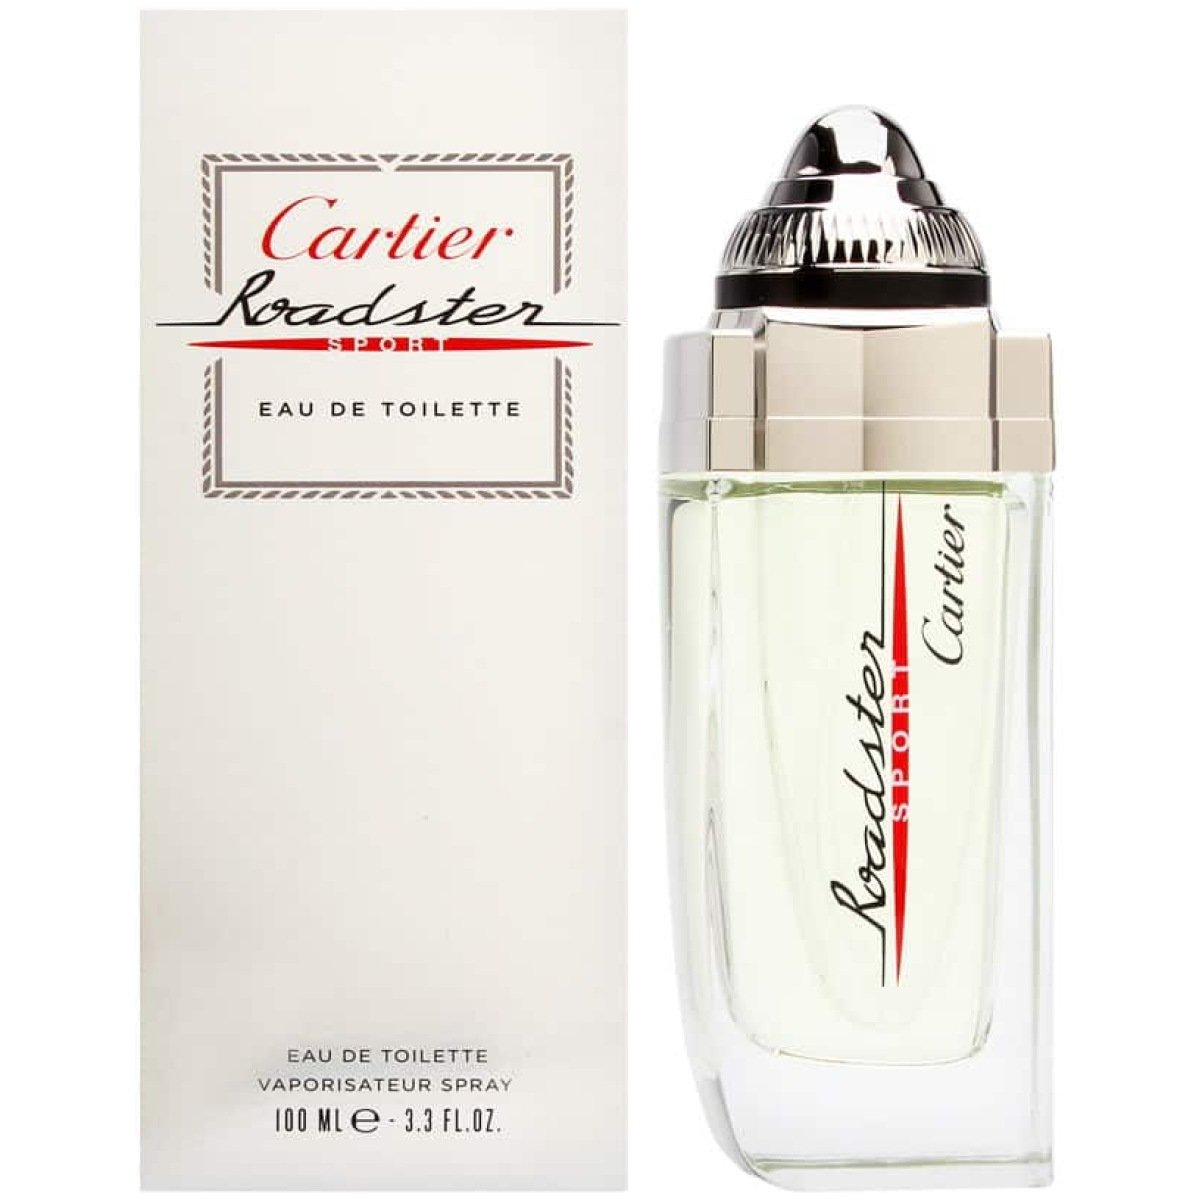 Cartier Roadster Sport EDT Perfume For Men 100ml